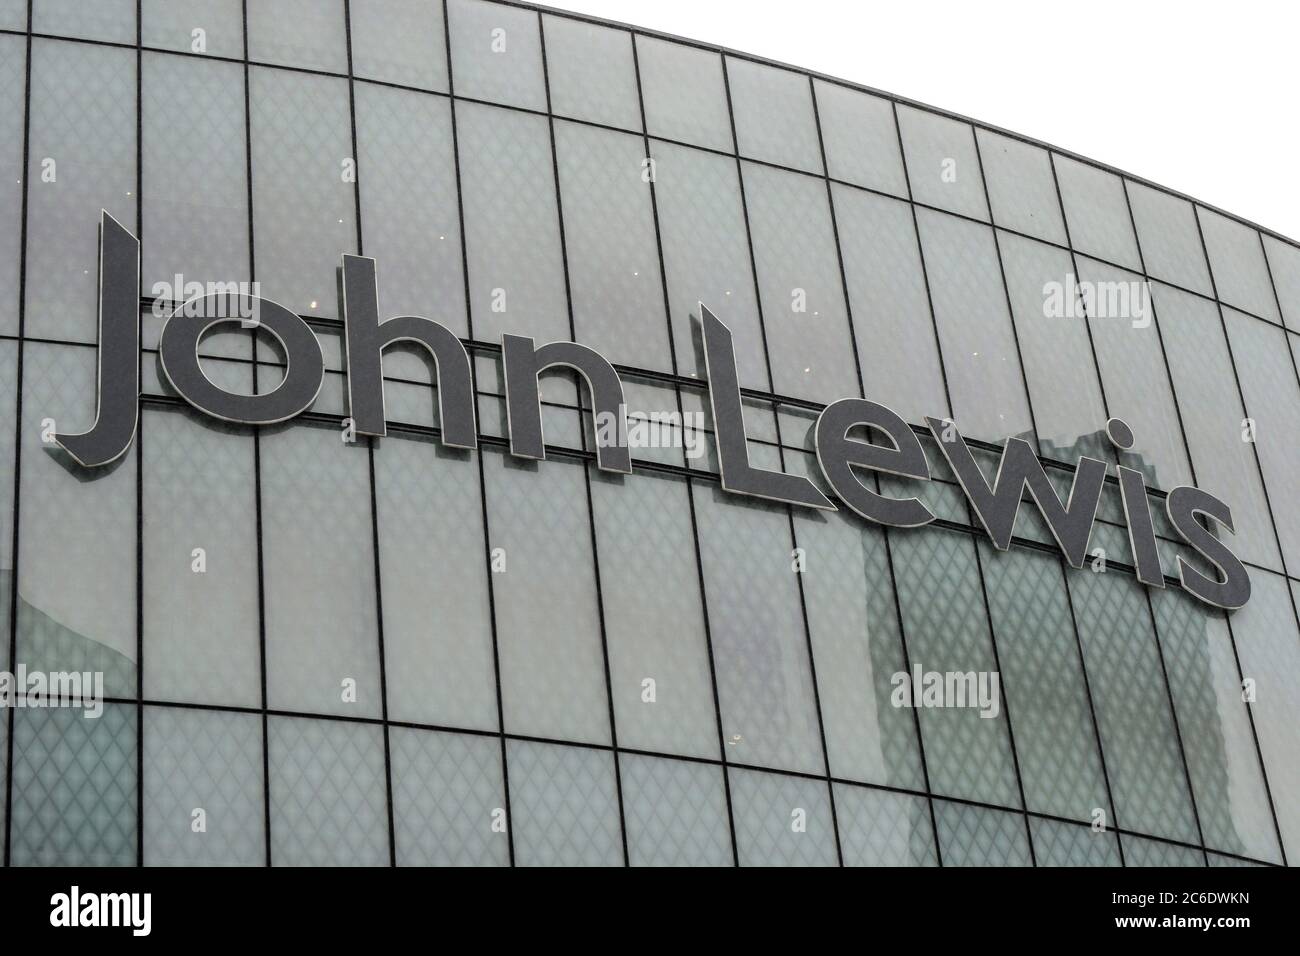 Birmingham, West Midlands, 9 juillet 2020. John Lewis a annoncé que 8 magasins ne rouvriront pas, y compris le magasin phare Grand Central de Birmingham qui n'a été ouvert qu'en septembre 2015 dans le cadre d'une transformation majeure de 600 M£ de New Street Station. Le magasin a été considéré comme un succès majeur dans le secteur JL. Crédit : Sam Holiday/Alay Live News Banque D'Images